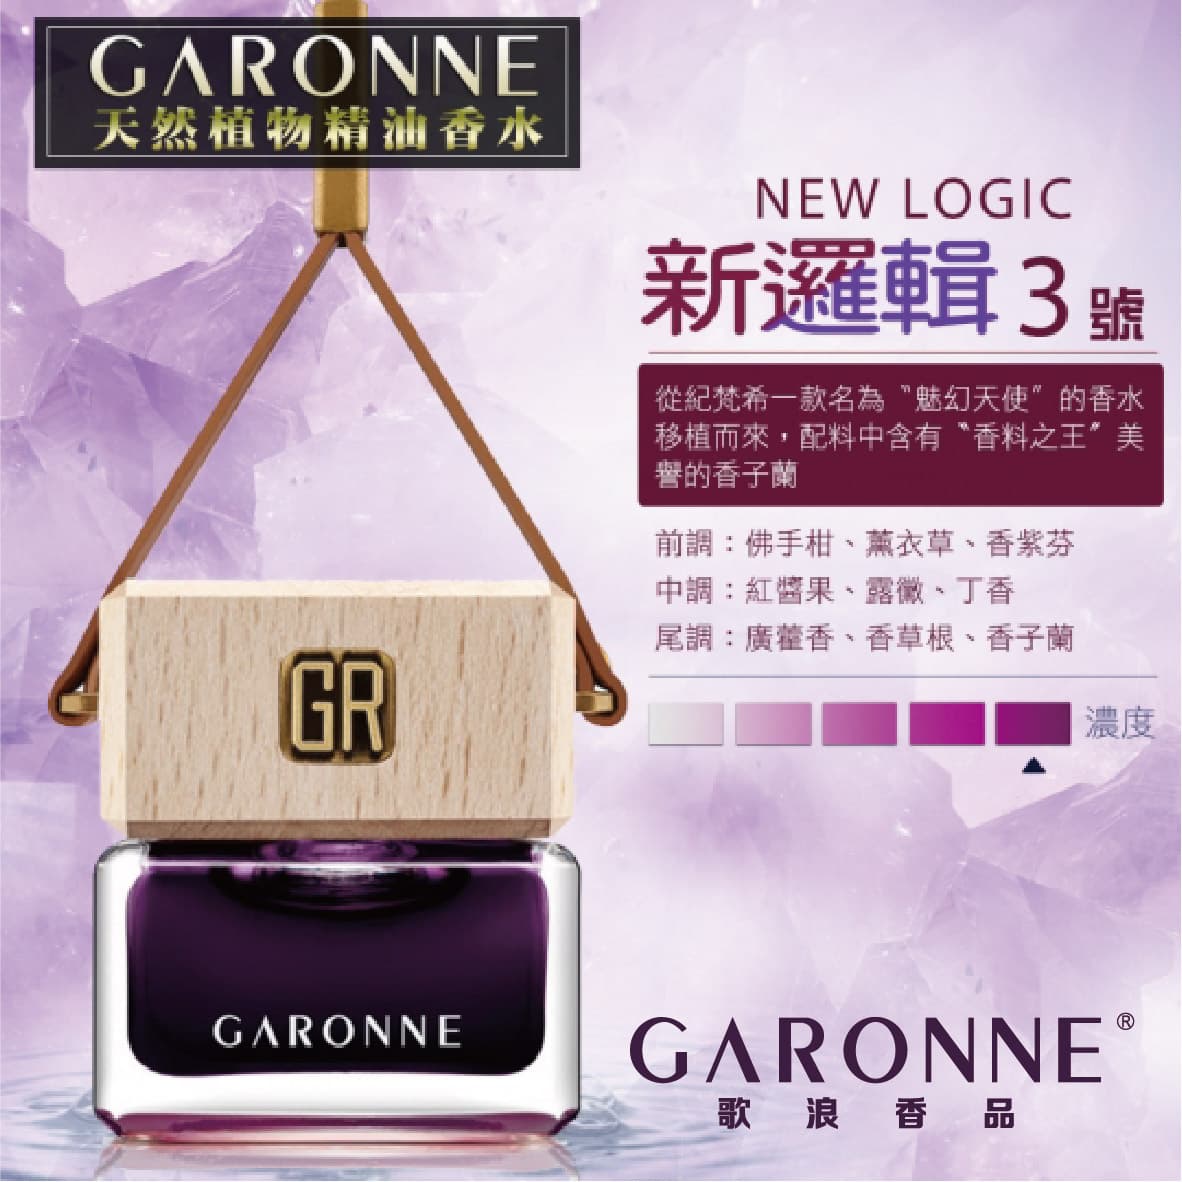 真便宜 GARONNE歌浪香品 法國吊式香水(3號-新邏輯)6ml